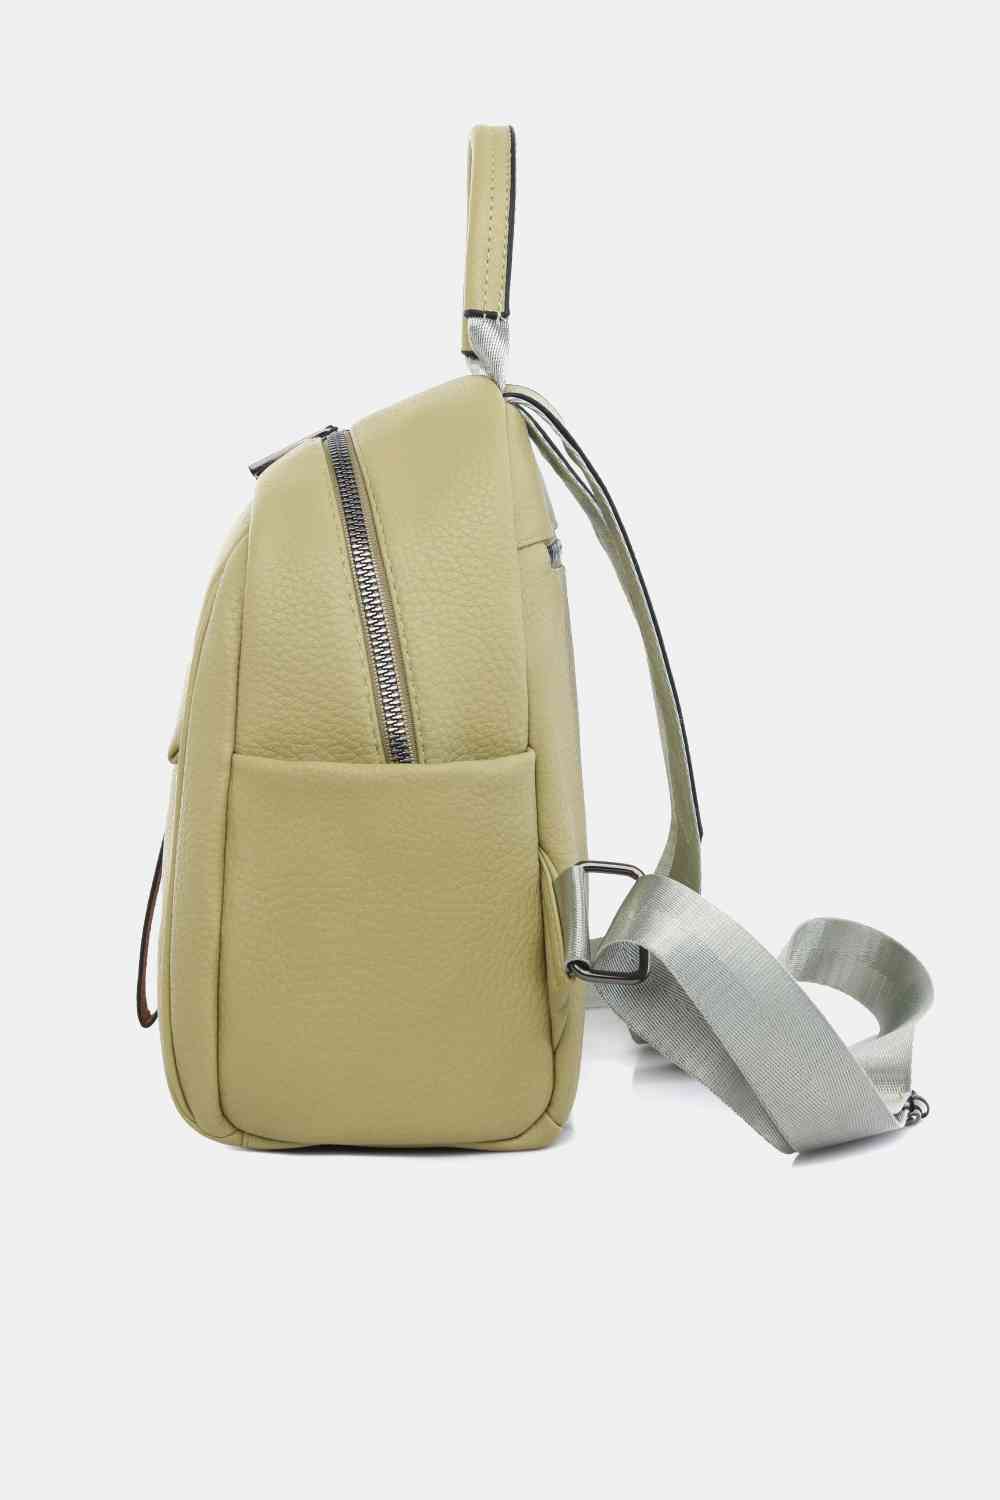 TEEK - Best Basic Backpack BAG TEEK Trend   